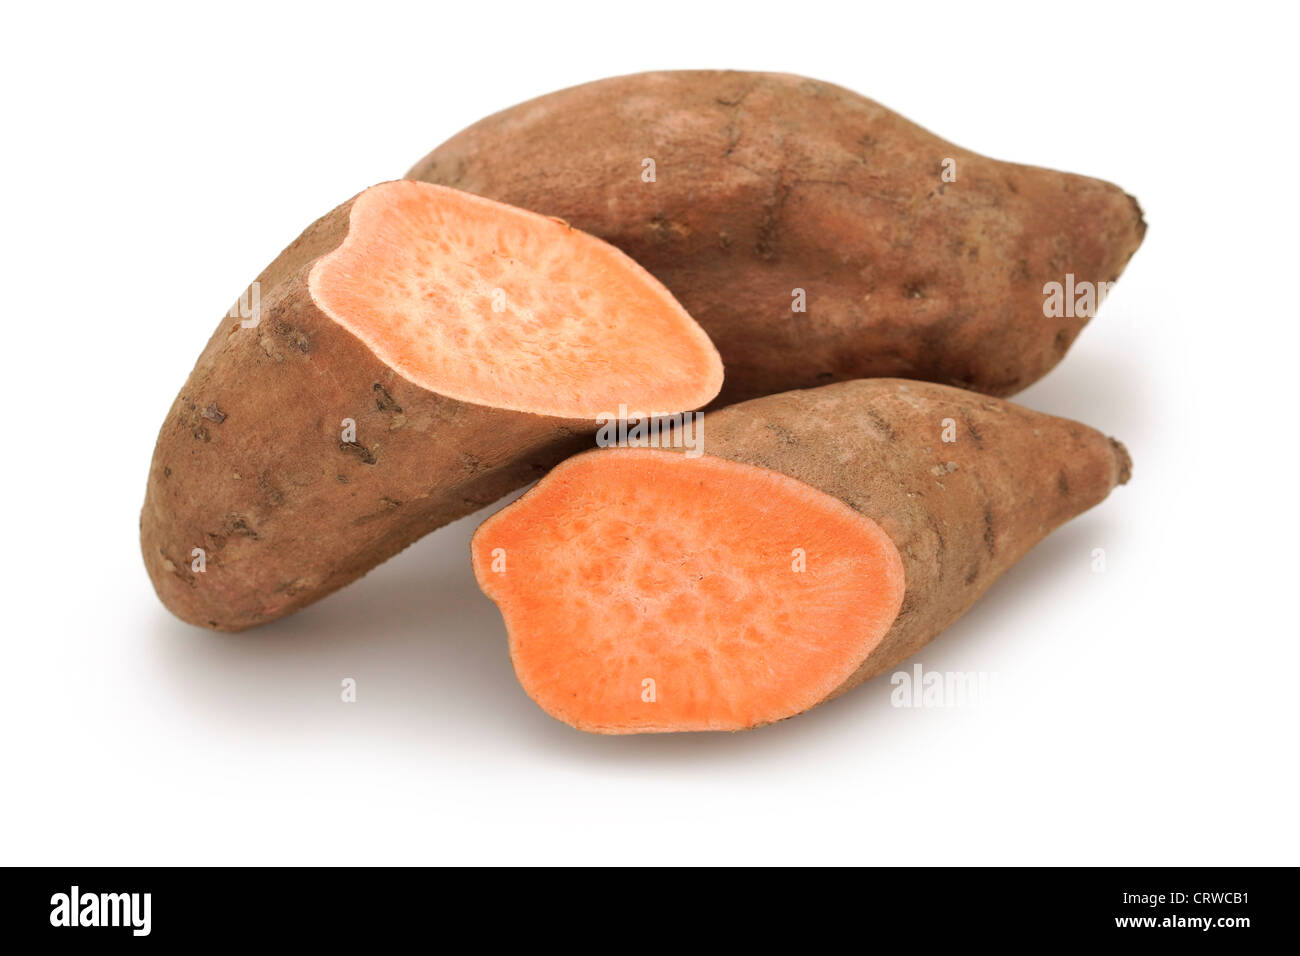 La patata dolce, patate dolci, igname, patate, arancione con la polpa esposta Foto Stock